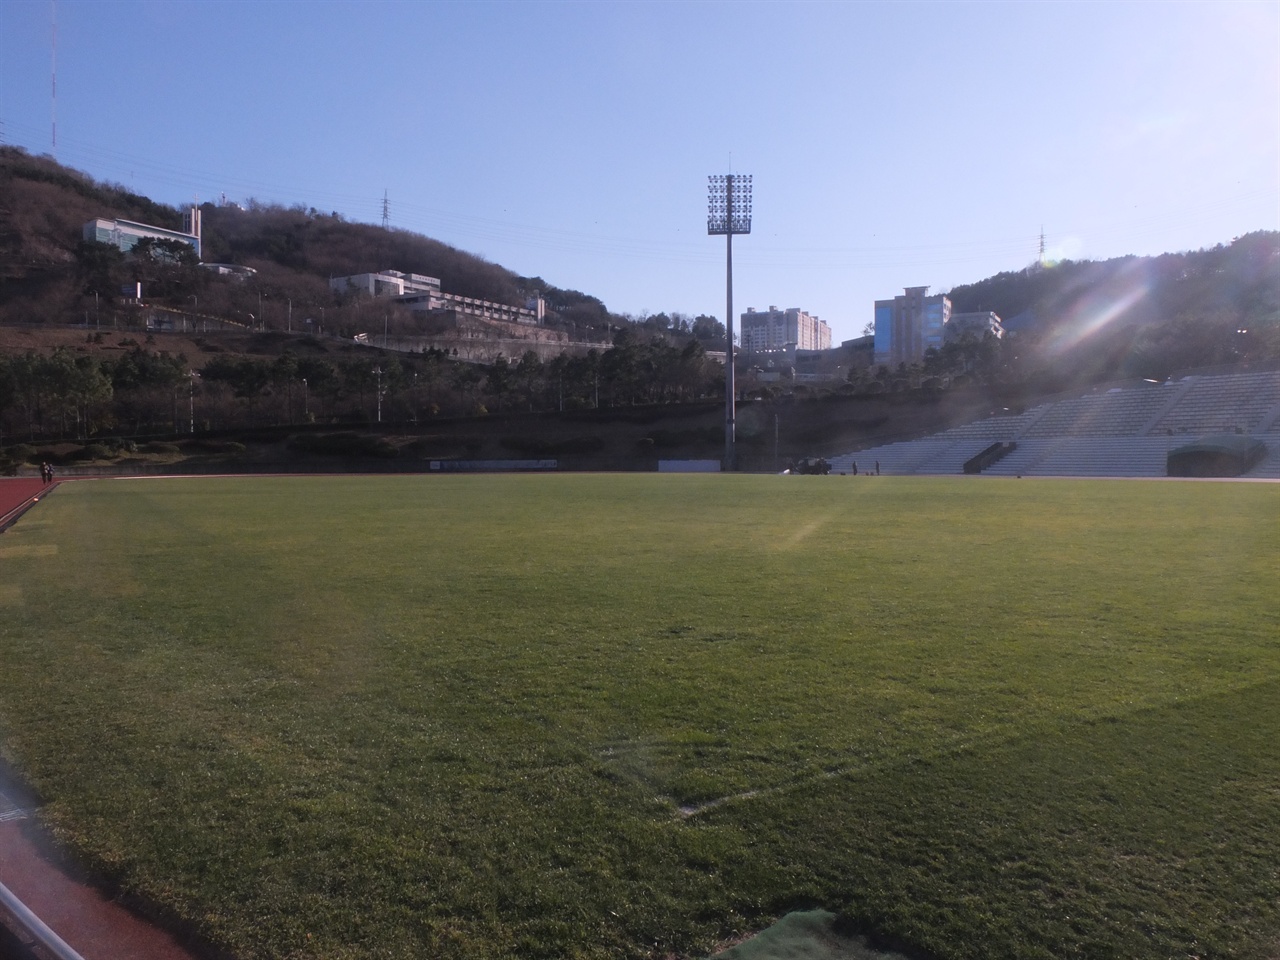 부산FC의 홈구장 부산 FC의 홈구장인 ‘부산 아시아드 보조경기장 ’. 3월 11일 이곳에서 역사적인 첫 홈경기가 열린다.